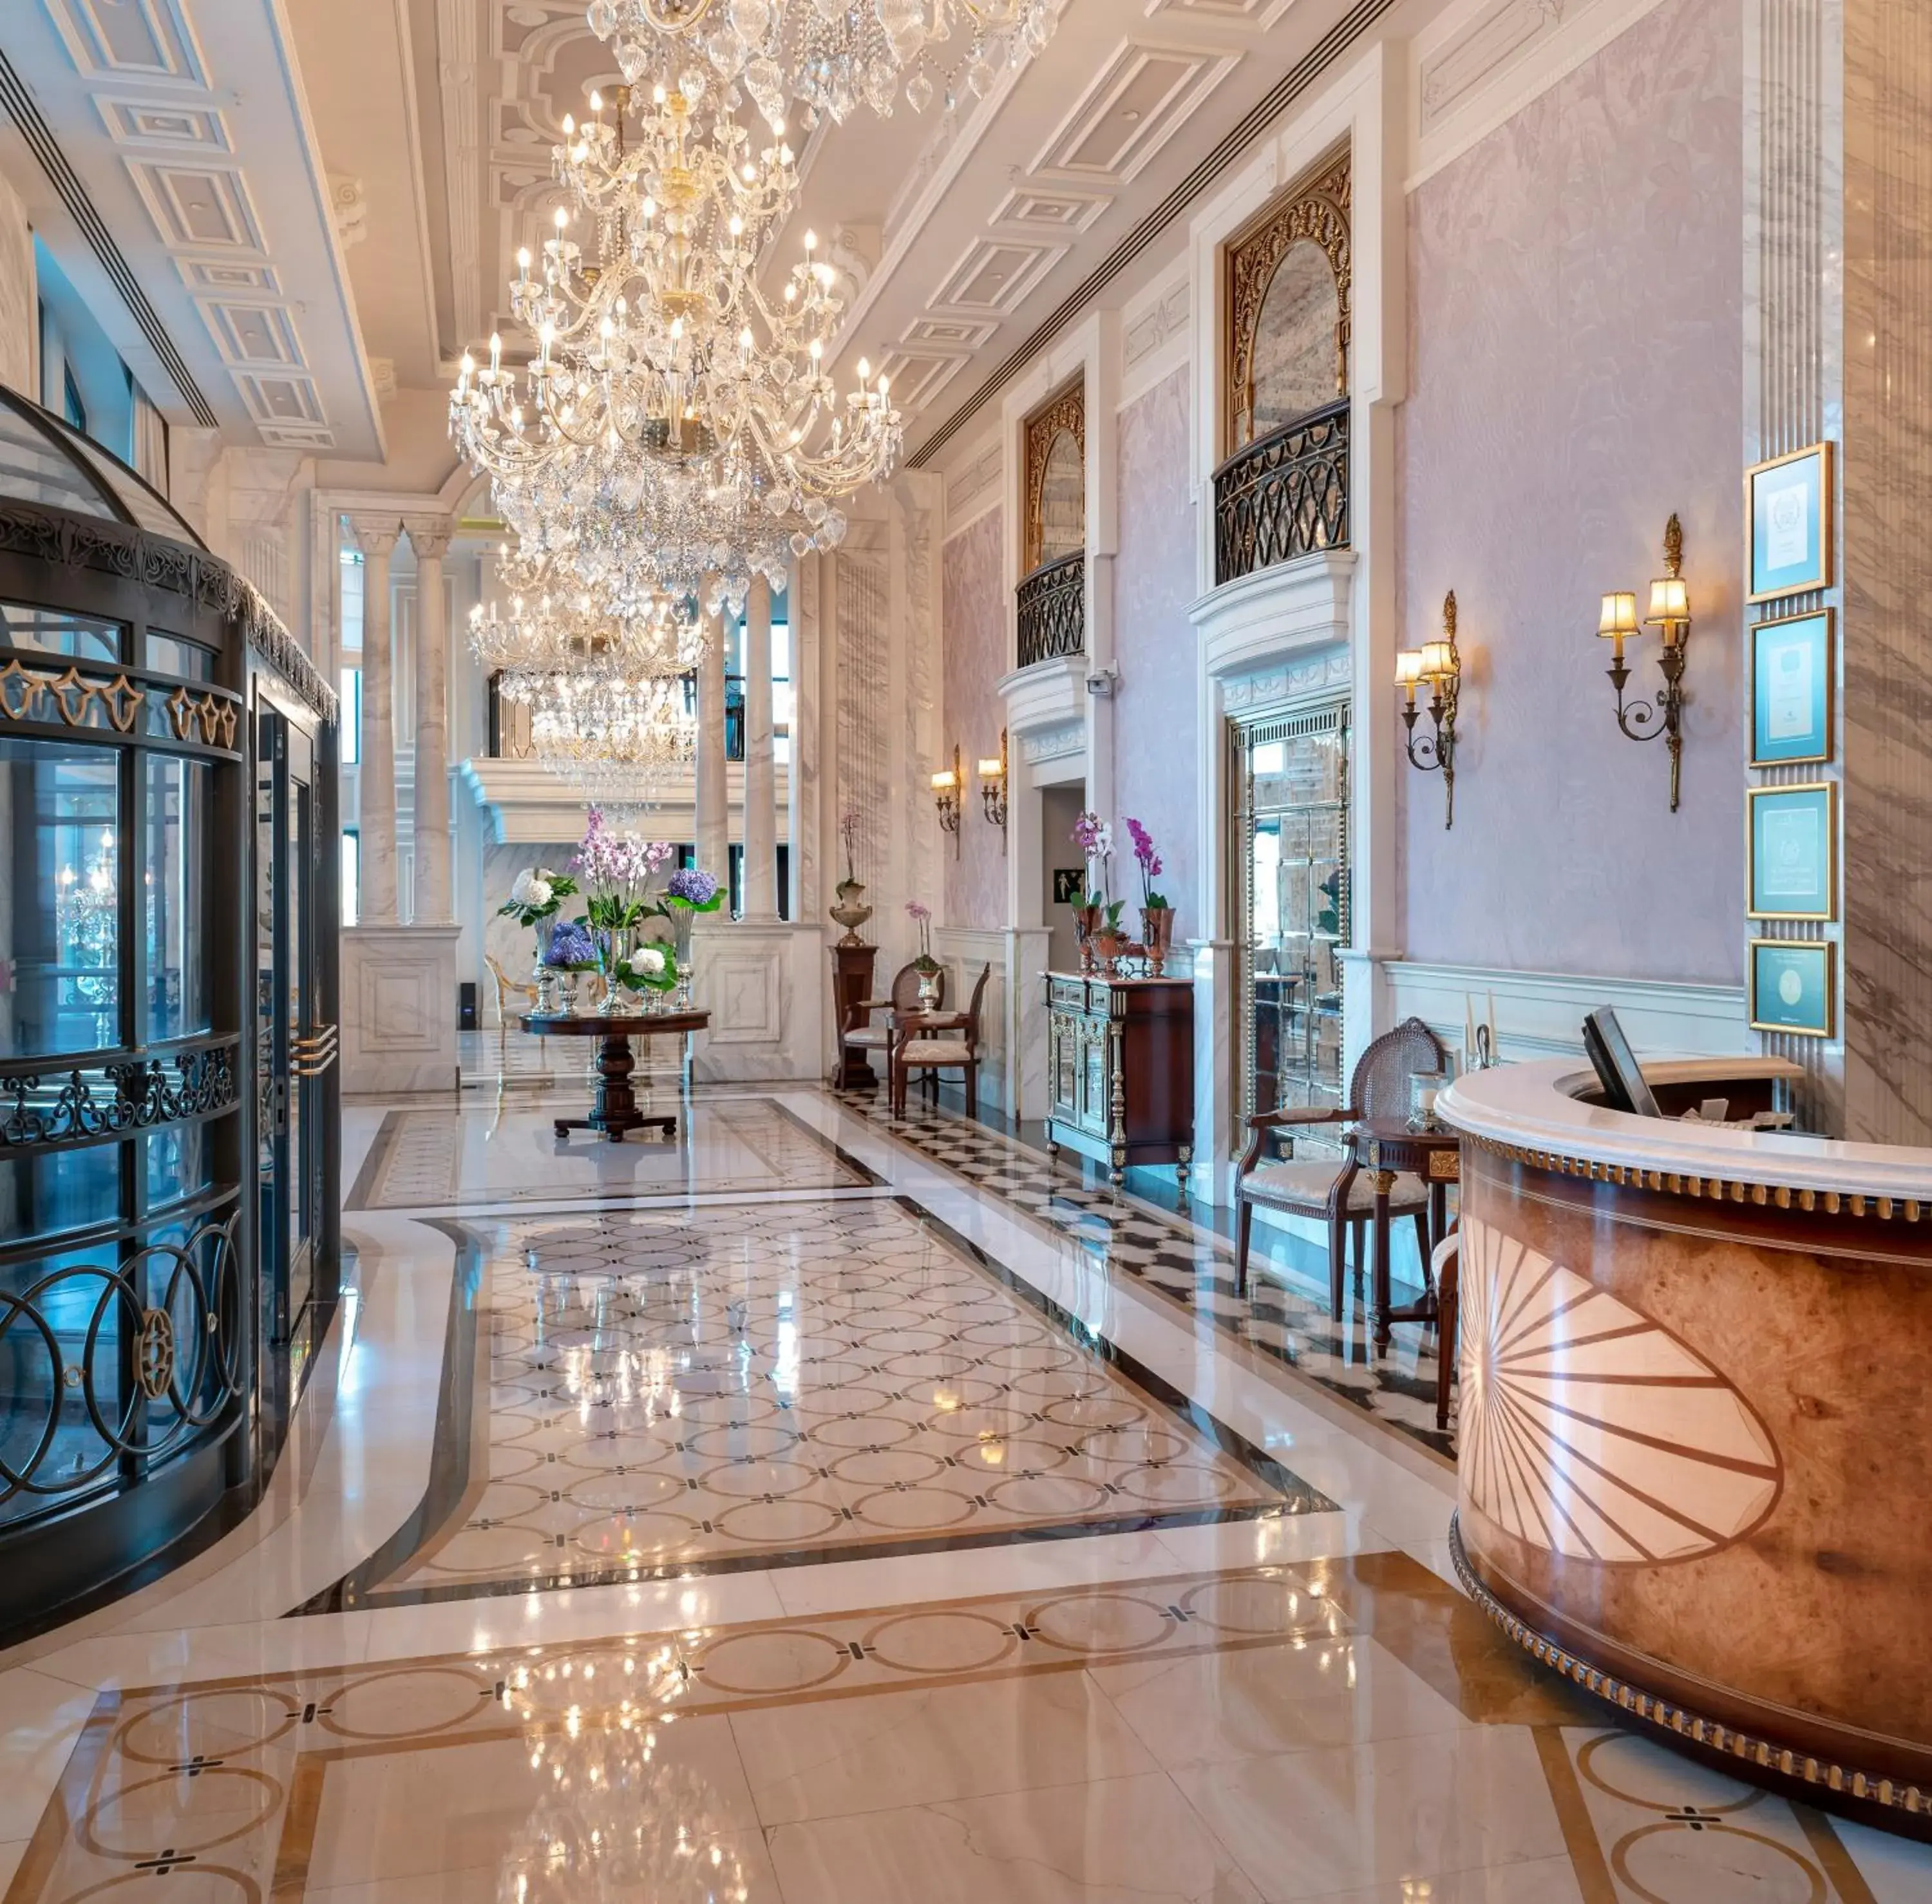 Lobby or reception in Rixos Pera Istanbul